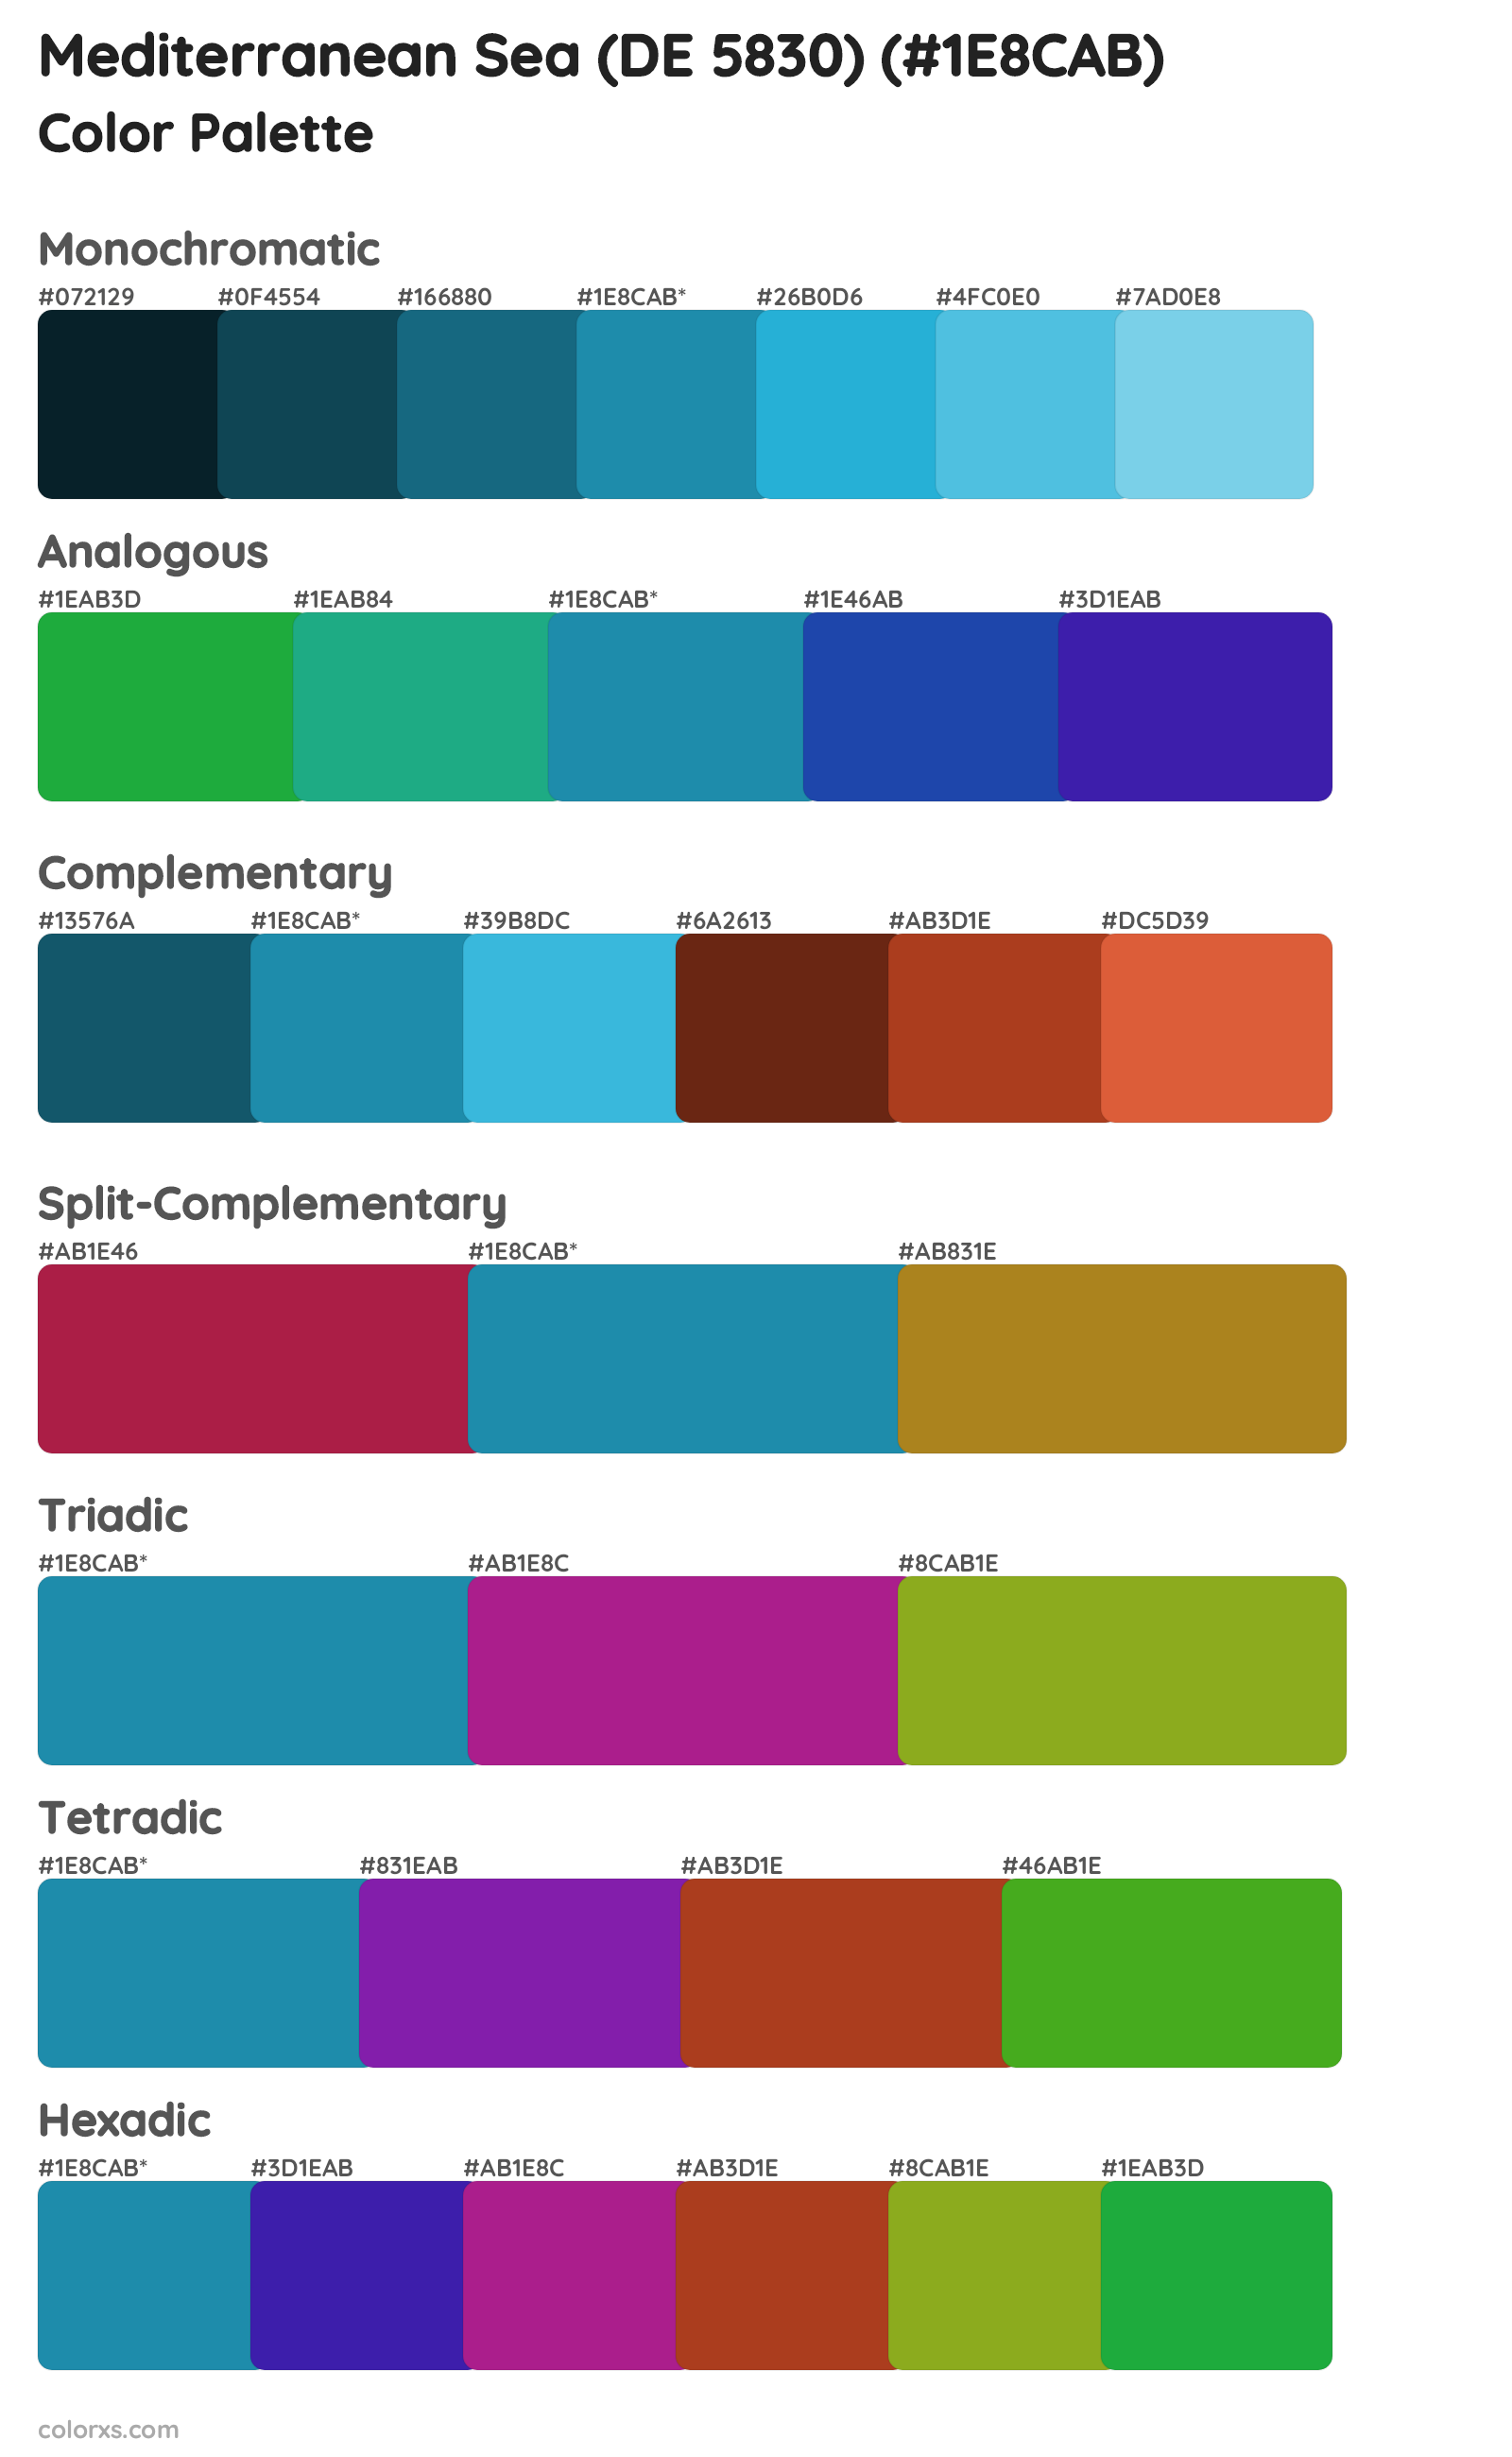 Mediterranean Sea (DE 5830) Color Scheme Palettes